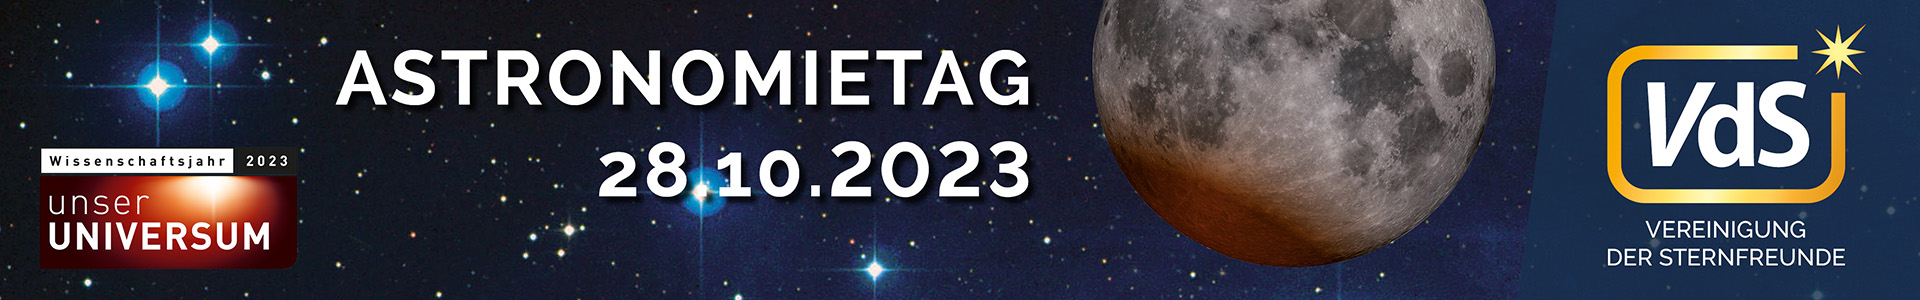 VdS Astronomietag 2023 Banner VdS WP mit Termin 1920x300